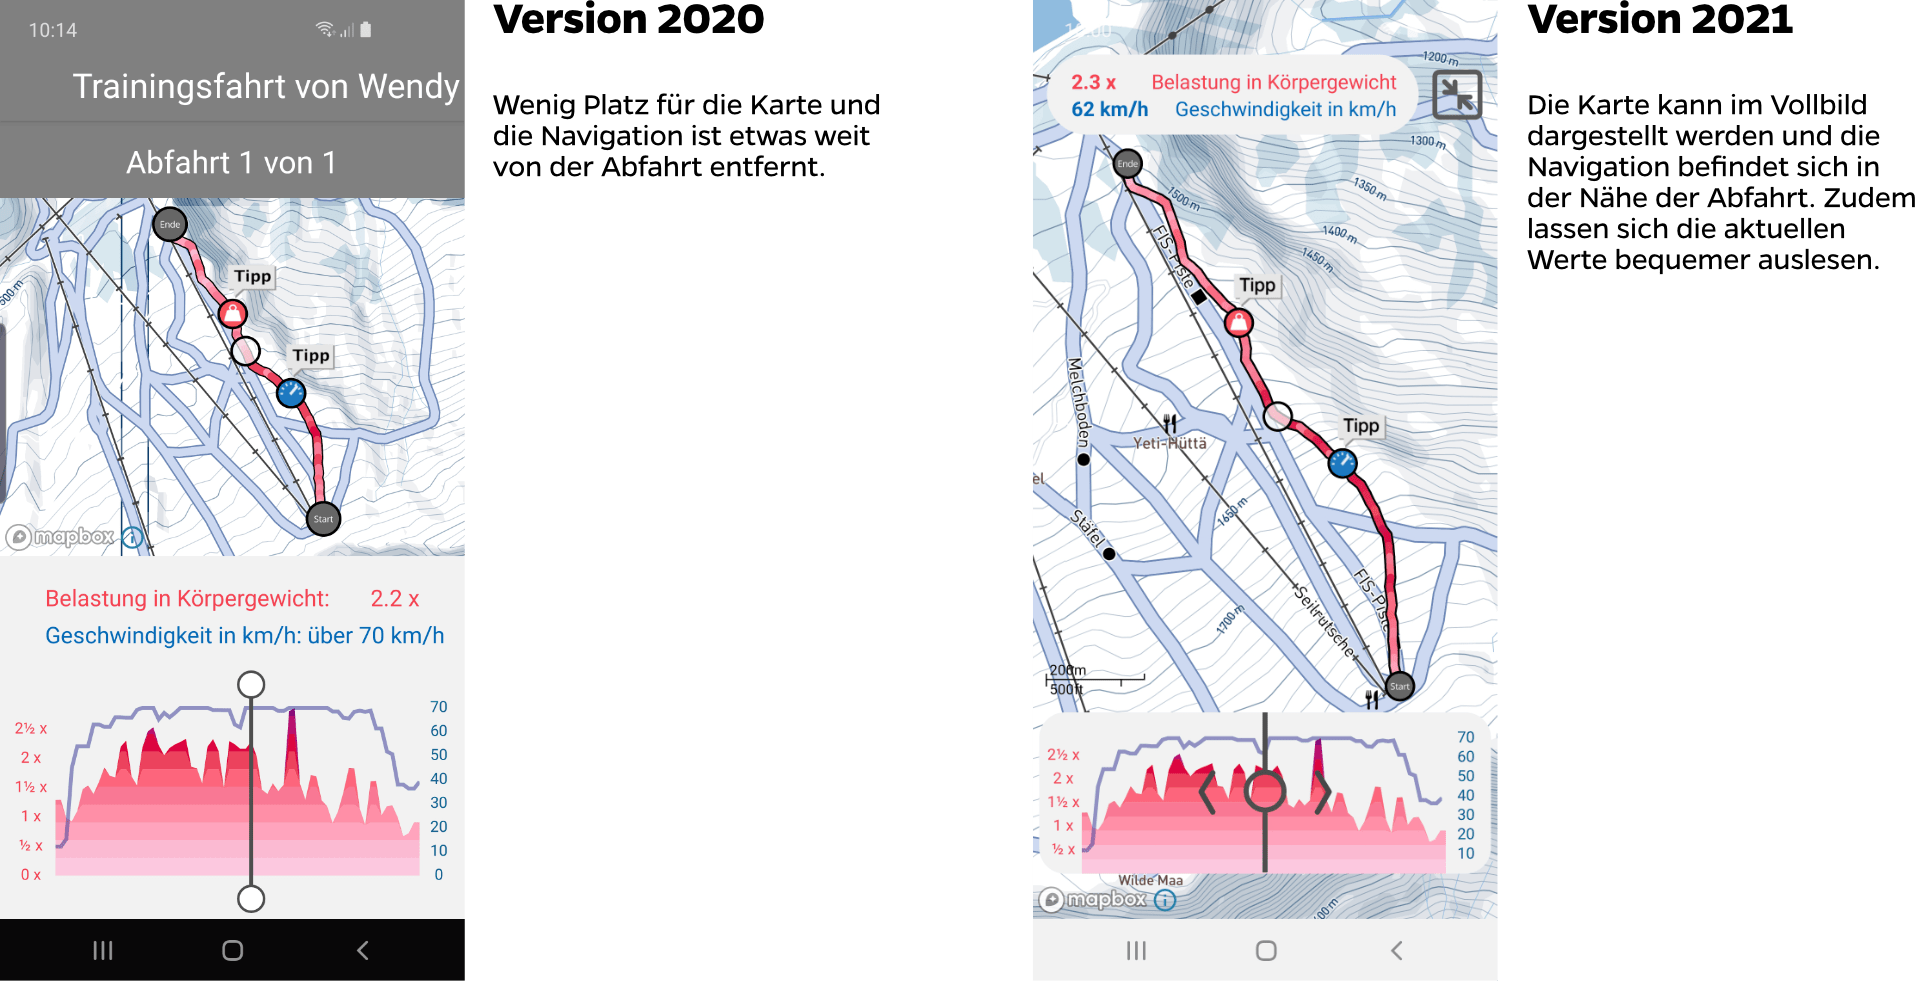 Vergleich der Abfahrtendarstellung zwischen der Version 2020 und 2021